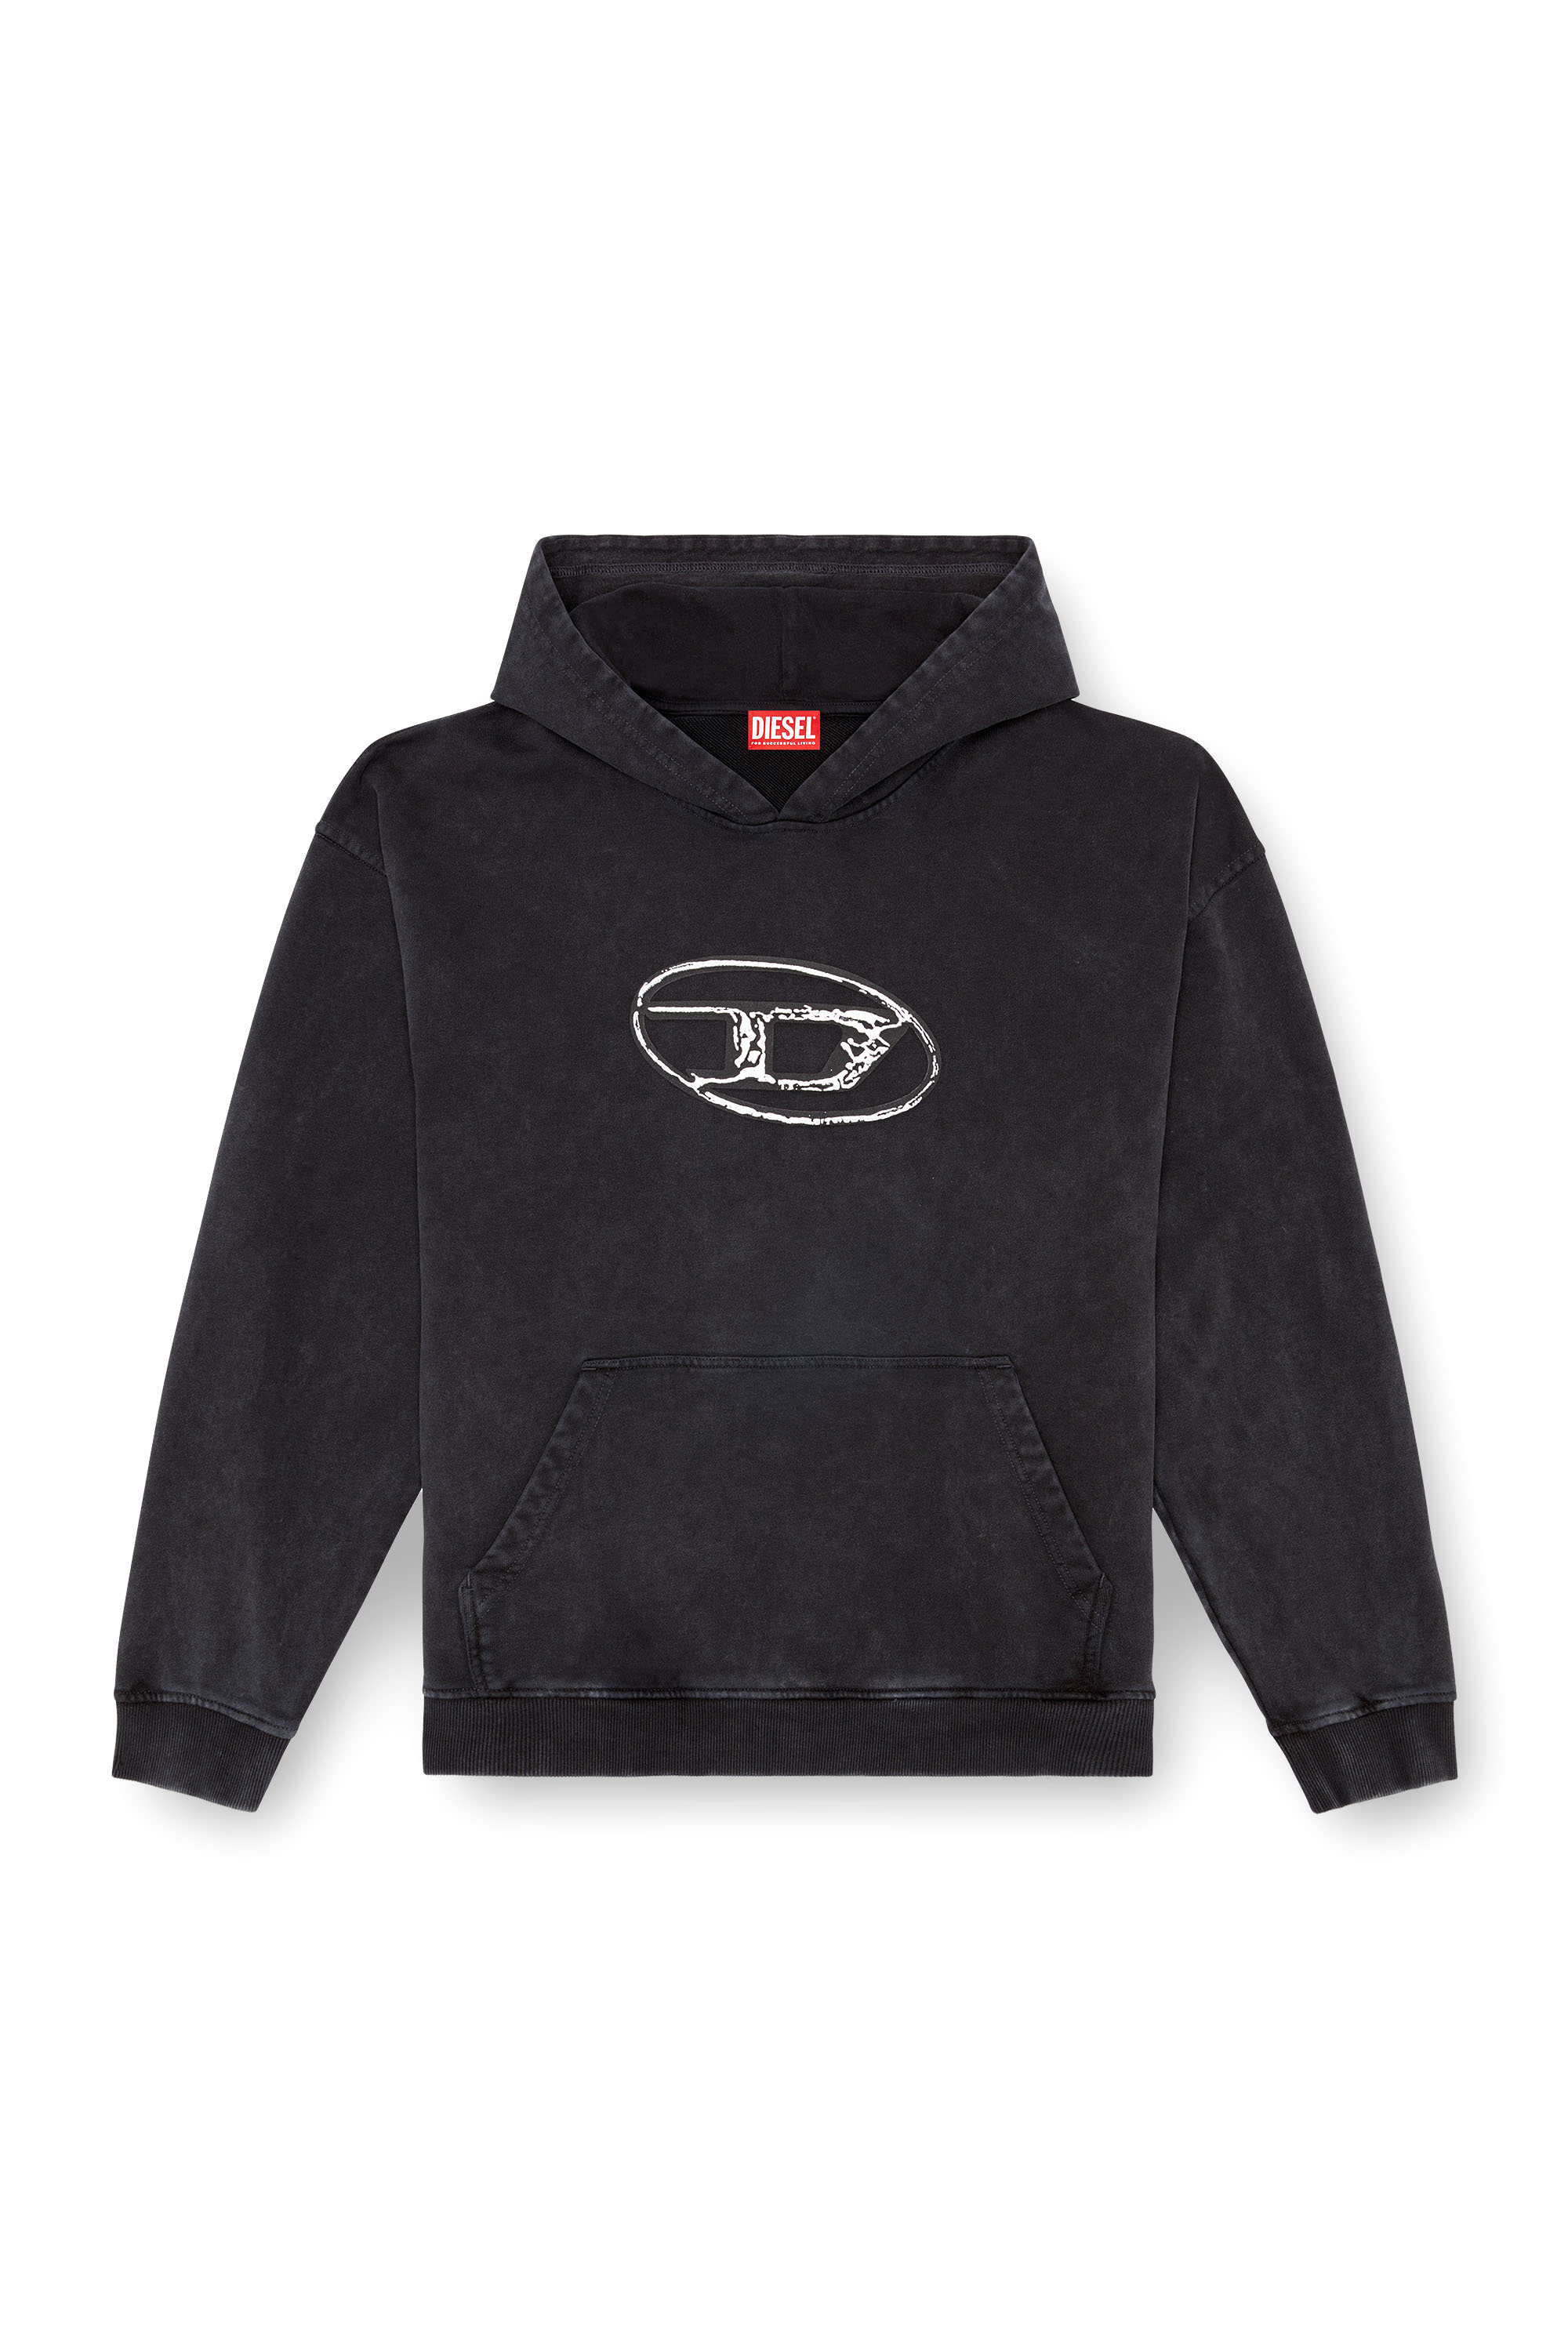 Diesel - S-BOXT-HOOD-Q7, Homme Sweat-shirt à capuche avec logo imprimé multicouche in Noir - Image 3